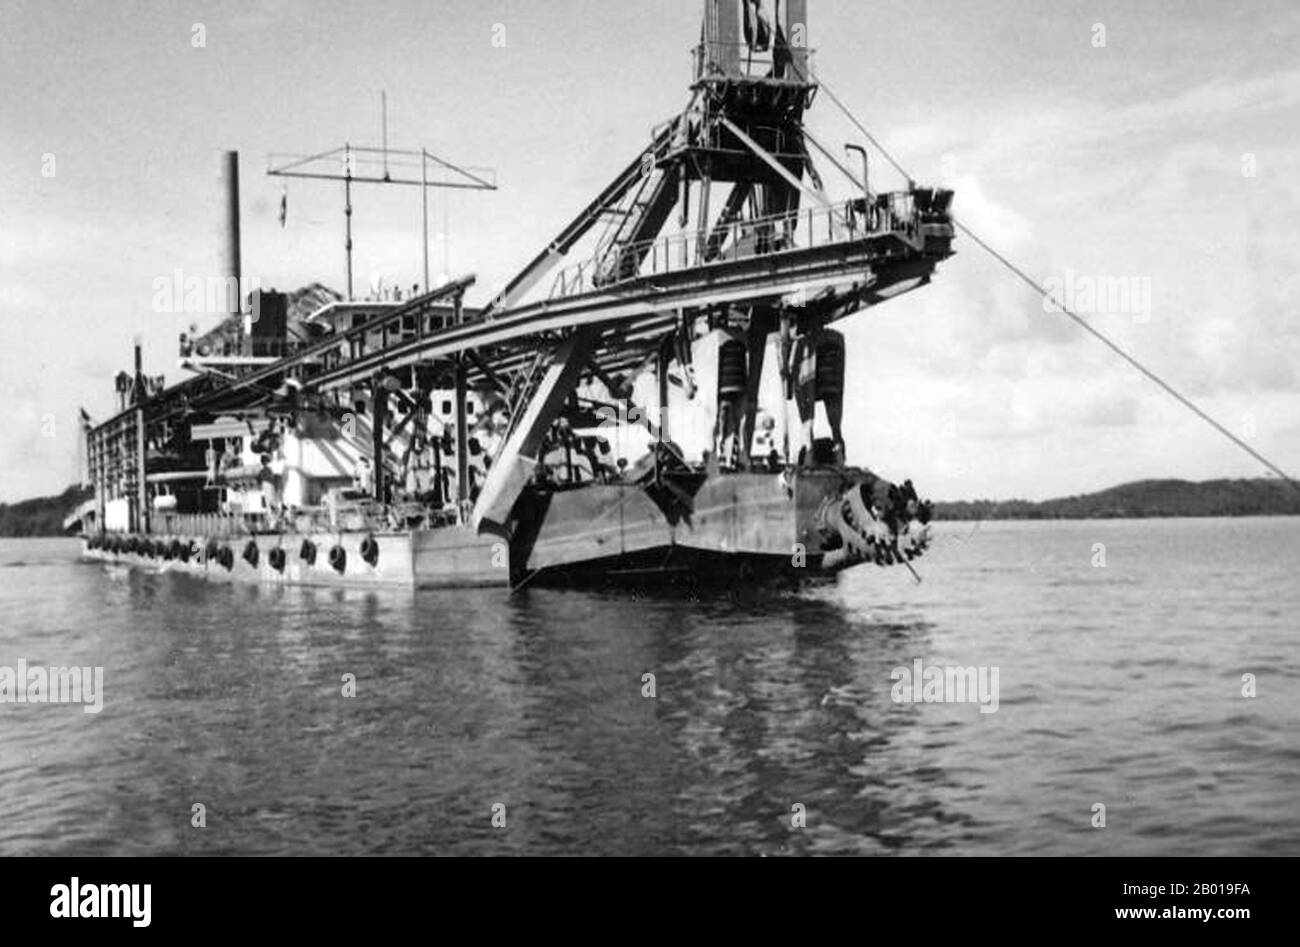 Thailandia: Un drago di stagno ancorato al largo di Phuket nel Mare delle Andamane c.. 1915. L'introduzione del primo dragatore di stagno nel 1907 ha permesso all'industria mineraria di stagno a Phuket di espandersi in una nuova vasta area che era stata precedentemente intatta. Diversi tipi di draghe sono stati utilizzati localmente. Draghe idrauliche risucchiarono il fondo dell'oceano per i depositi alluvionali di stagno attraverso un tubo, separarono la latta e scaricarono la spolietta sulla riva attraverso una pipeline galleggiante. Le draghe dell'elevatore hanno impiegato una catena infinita di secchi piccoli per raschiare il pavimento dell'oceano e separano il minerale di stagno dal resto della spoil. Foto Stock